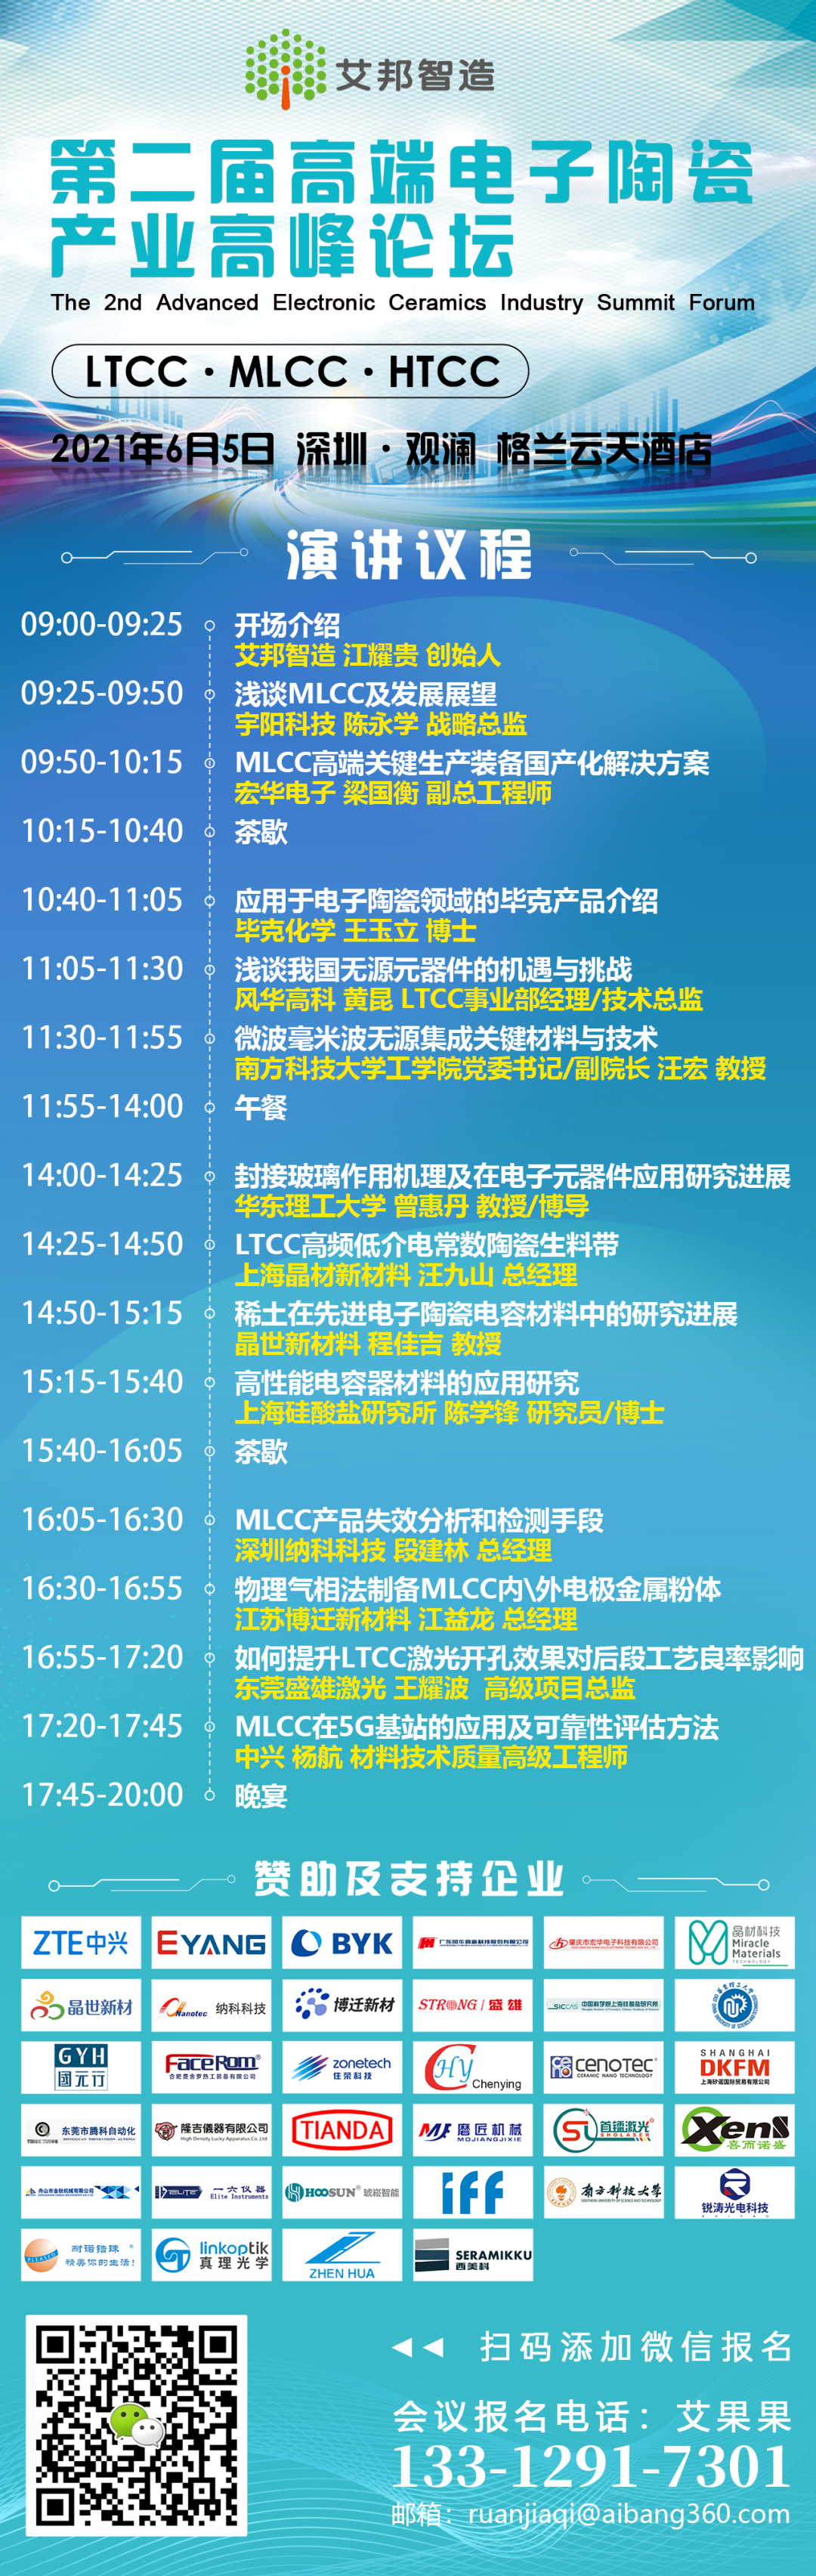 上海晶材新材将出席“第二届高端电子MLCC、LTCC产业高峰论坛”并做LTCC高频低介电常数陶瓷生料带主题演讲